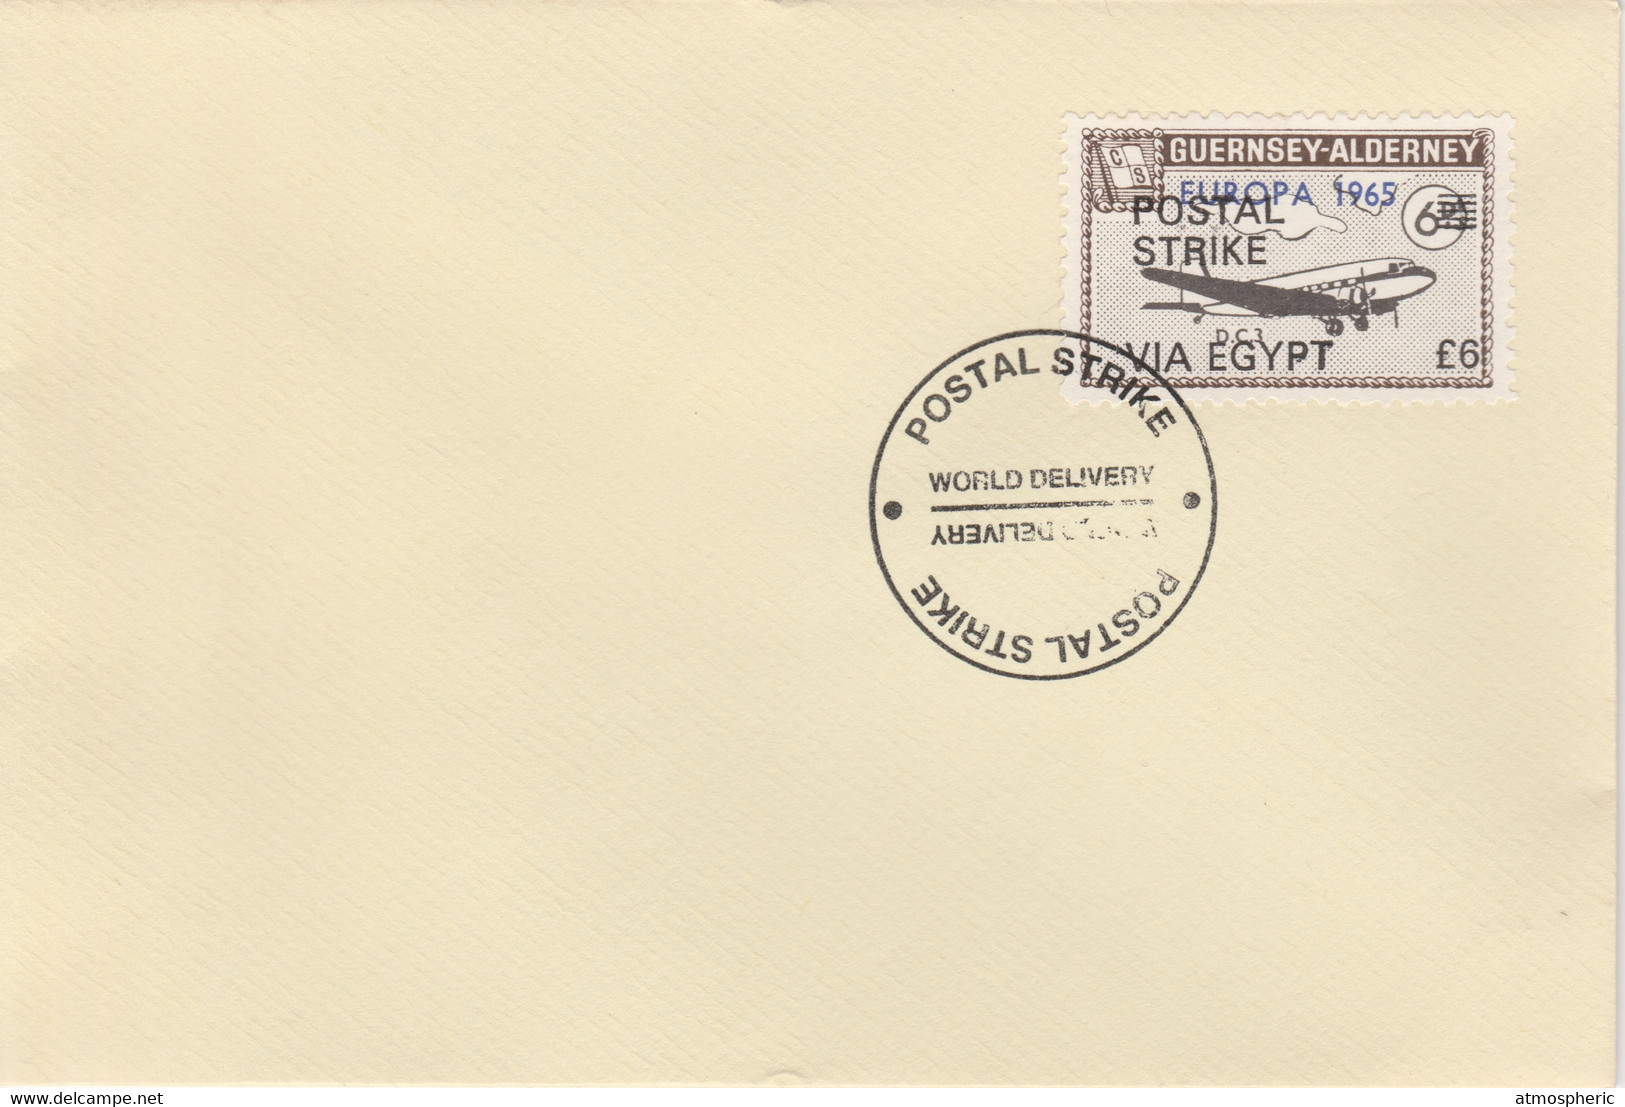 Guernsey - Alderney 1971 Postal Strike Cover To Egypt Bearing DC-3 6d Overprinted Europa 1965 - Sin Clasificación